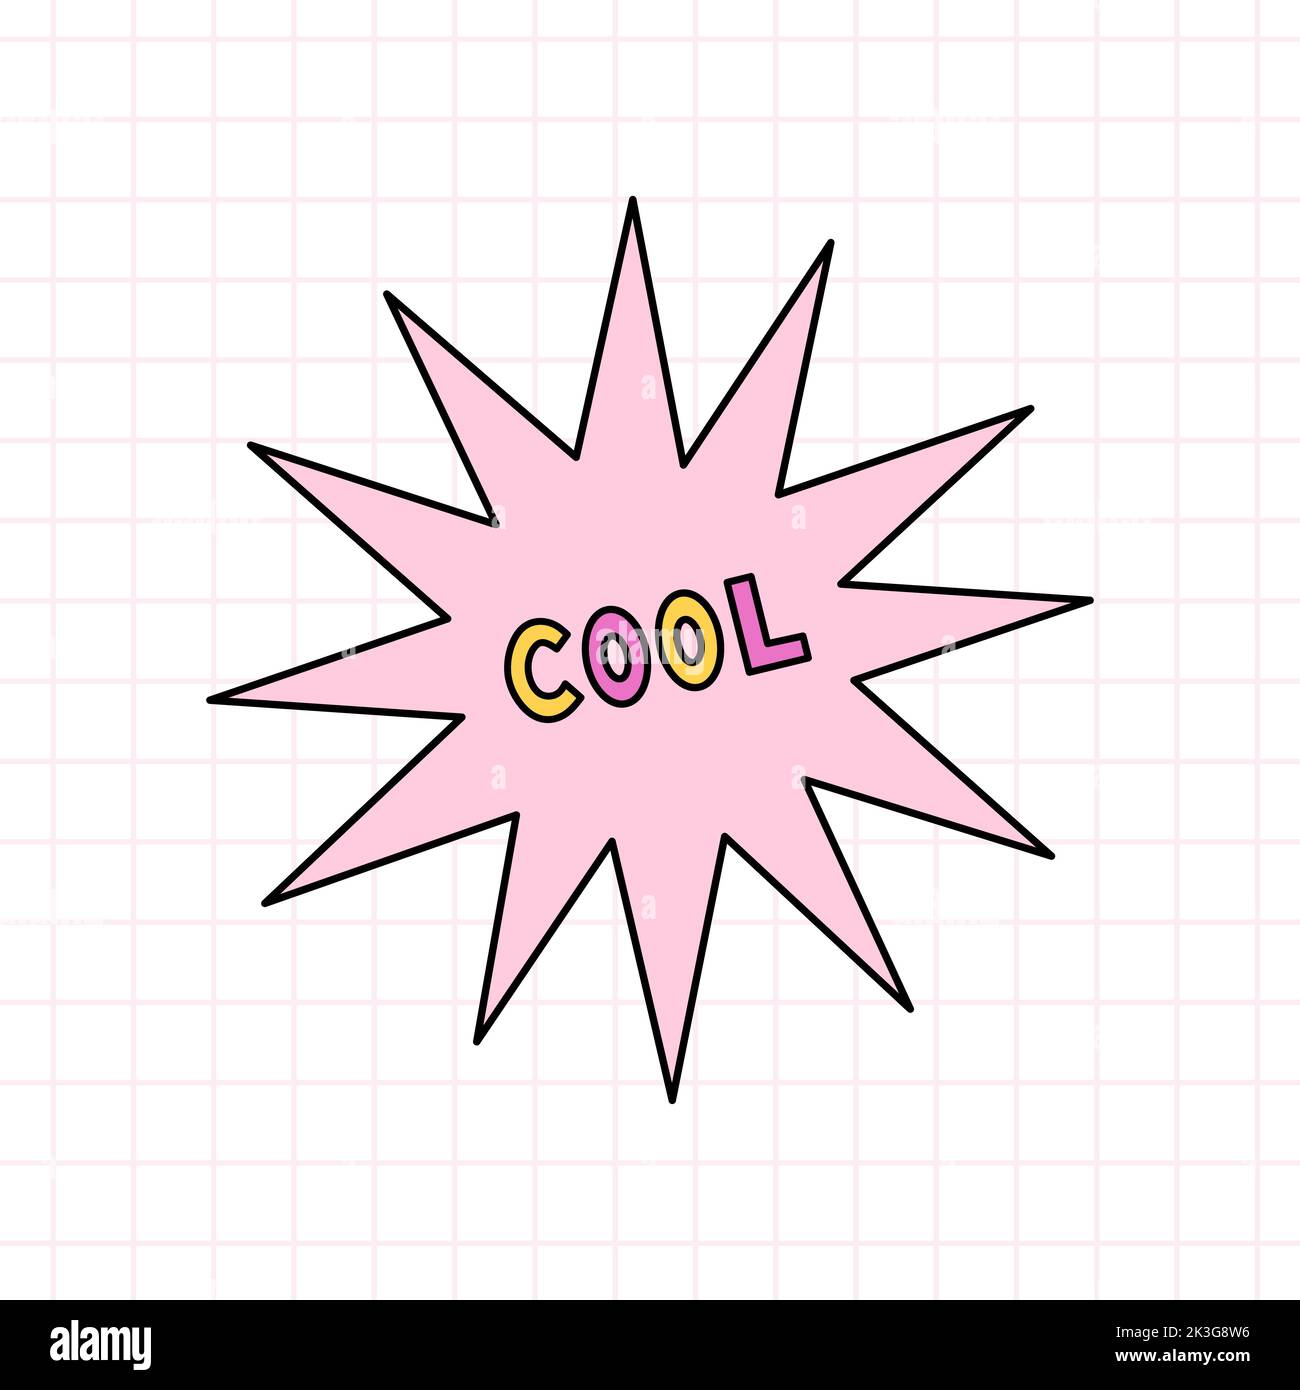 Niedlicher rosa Stern mit dem Text Cool im Stil der 90s. Vektor-handgezeichnete Doodle-Illustration isoliert auf weißem Hintergrund. Nostalgie für die 1990s Stock Vektor